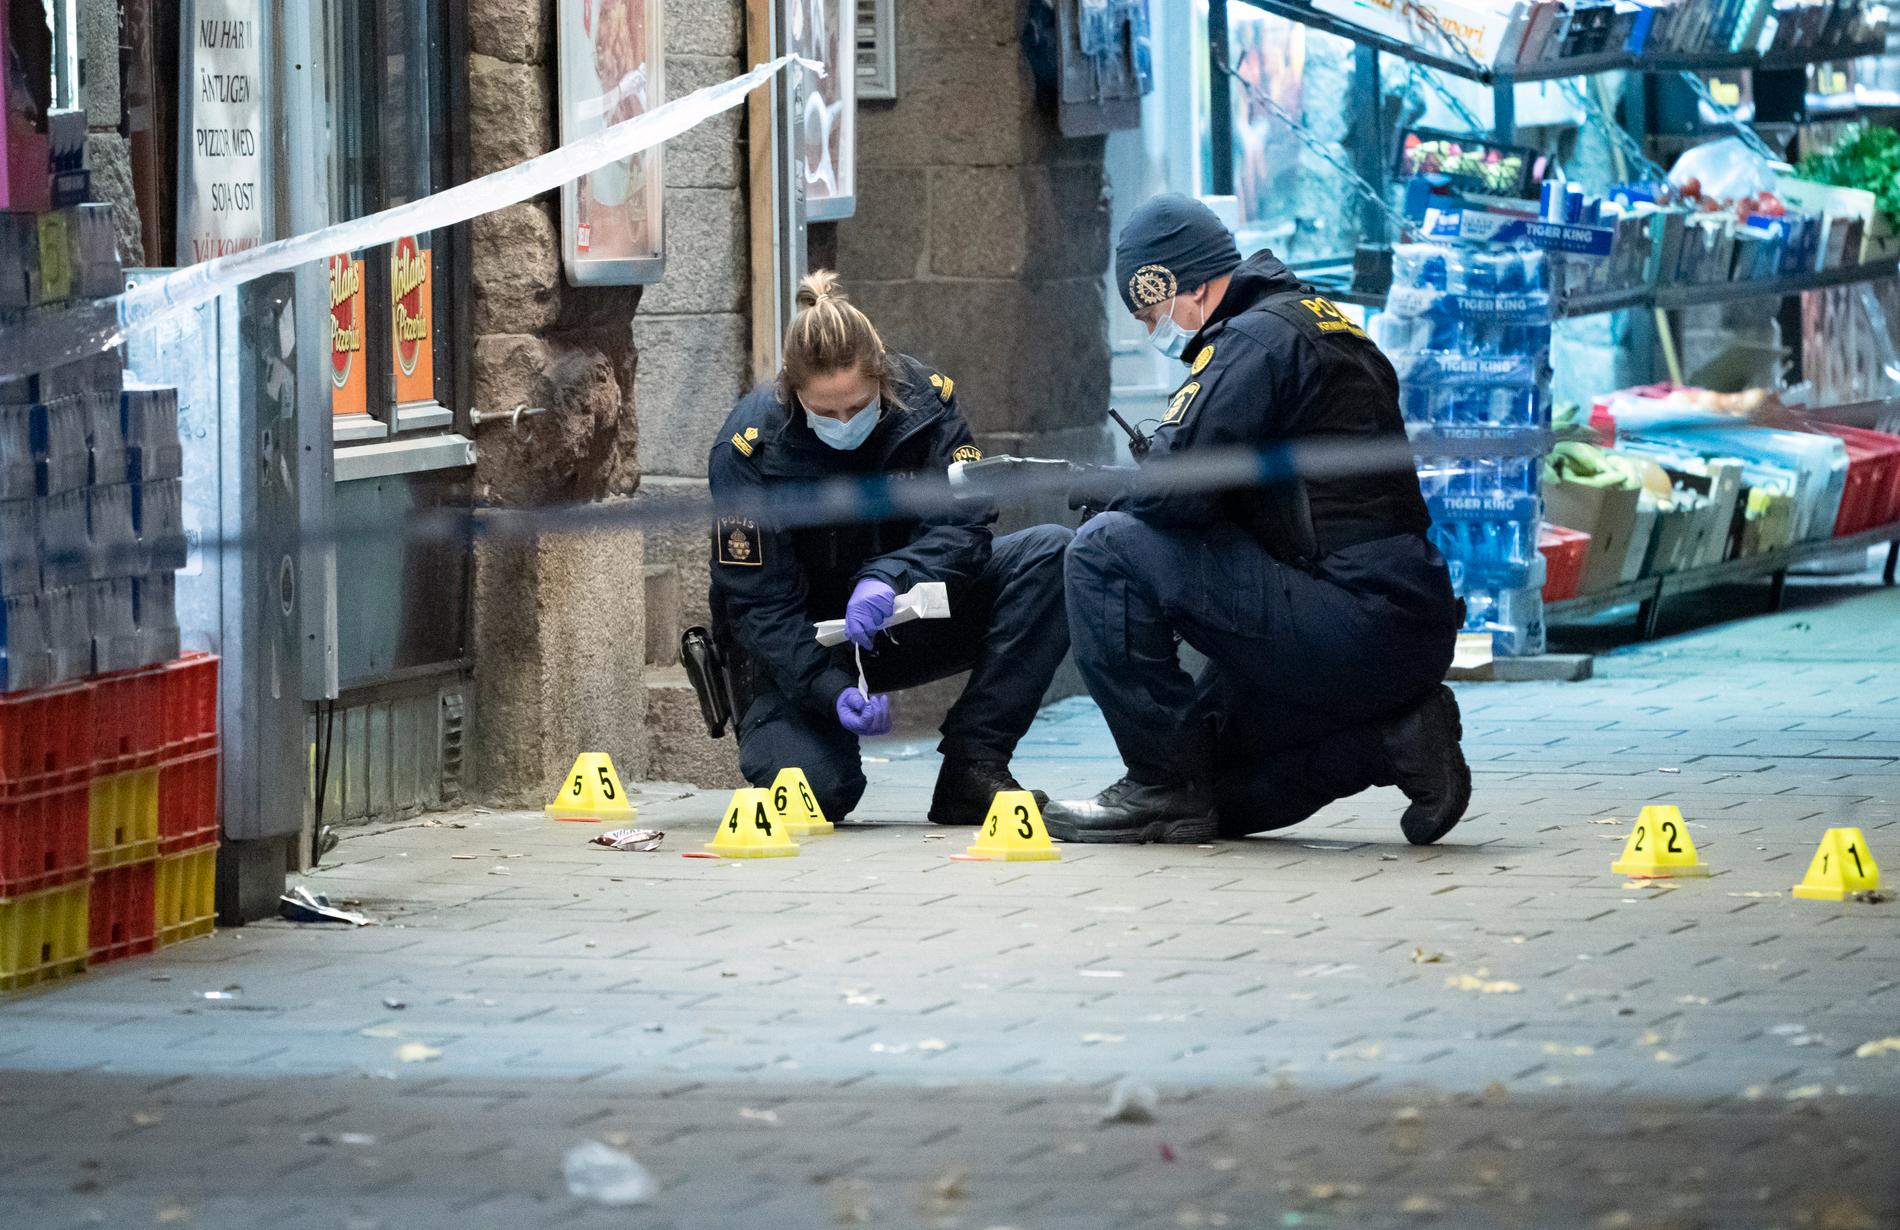 Polisens kriminaltekniker arbetar på platsen efter skottlossningen. 